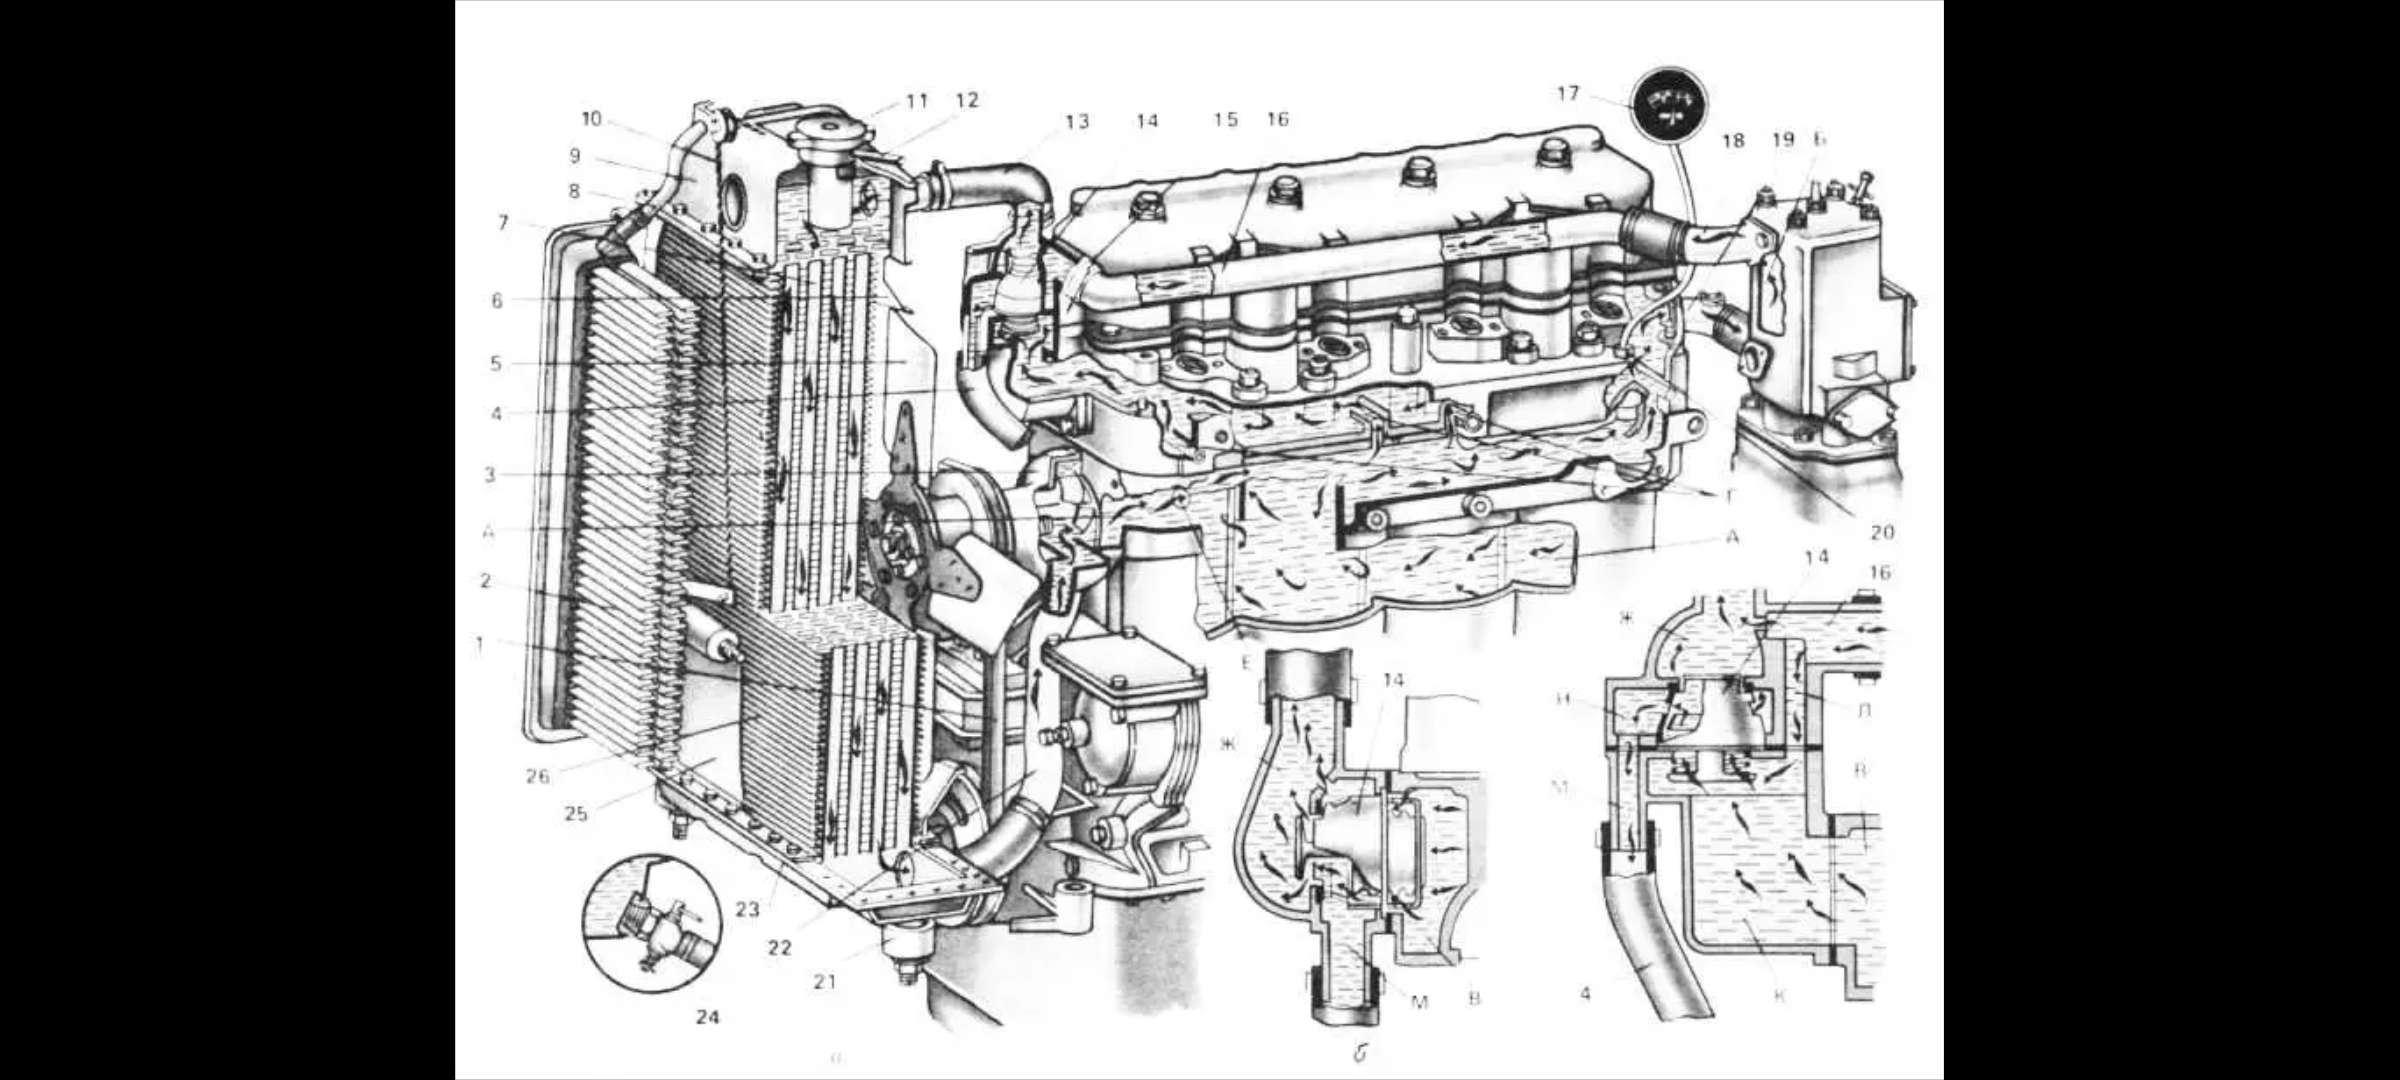 Охлаждение двигателя мтз. Система охлаждения двигателя д-240 трактора МТЗ-80. Система охлаждения двигателя д240 МТЗ 2. Система охлаждения трактора МТЗ-80. Система охлаждения двигателя д 240 МТЗ 80.